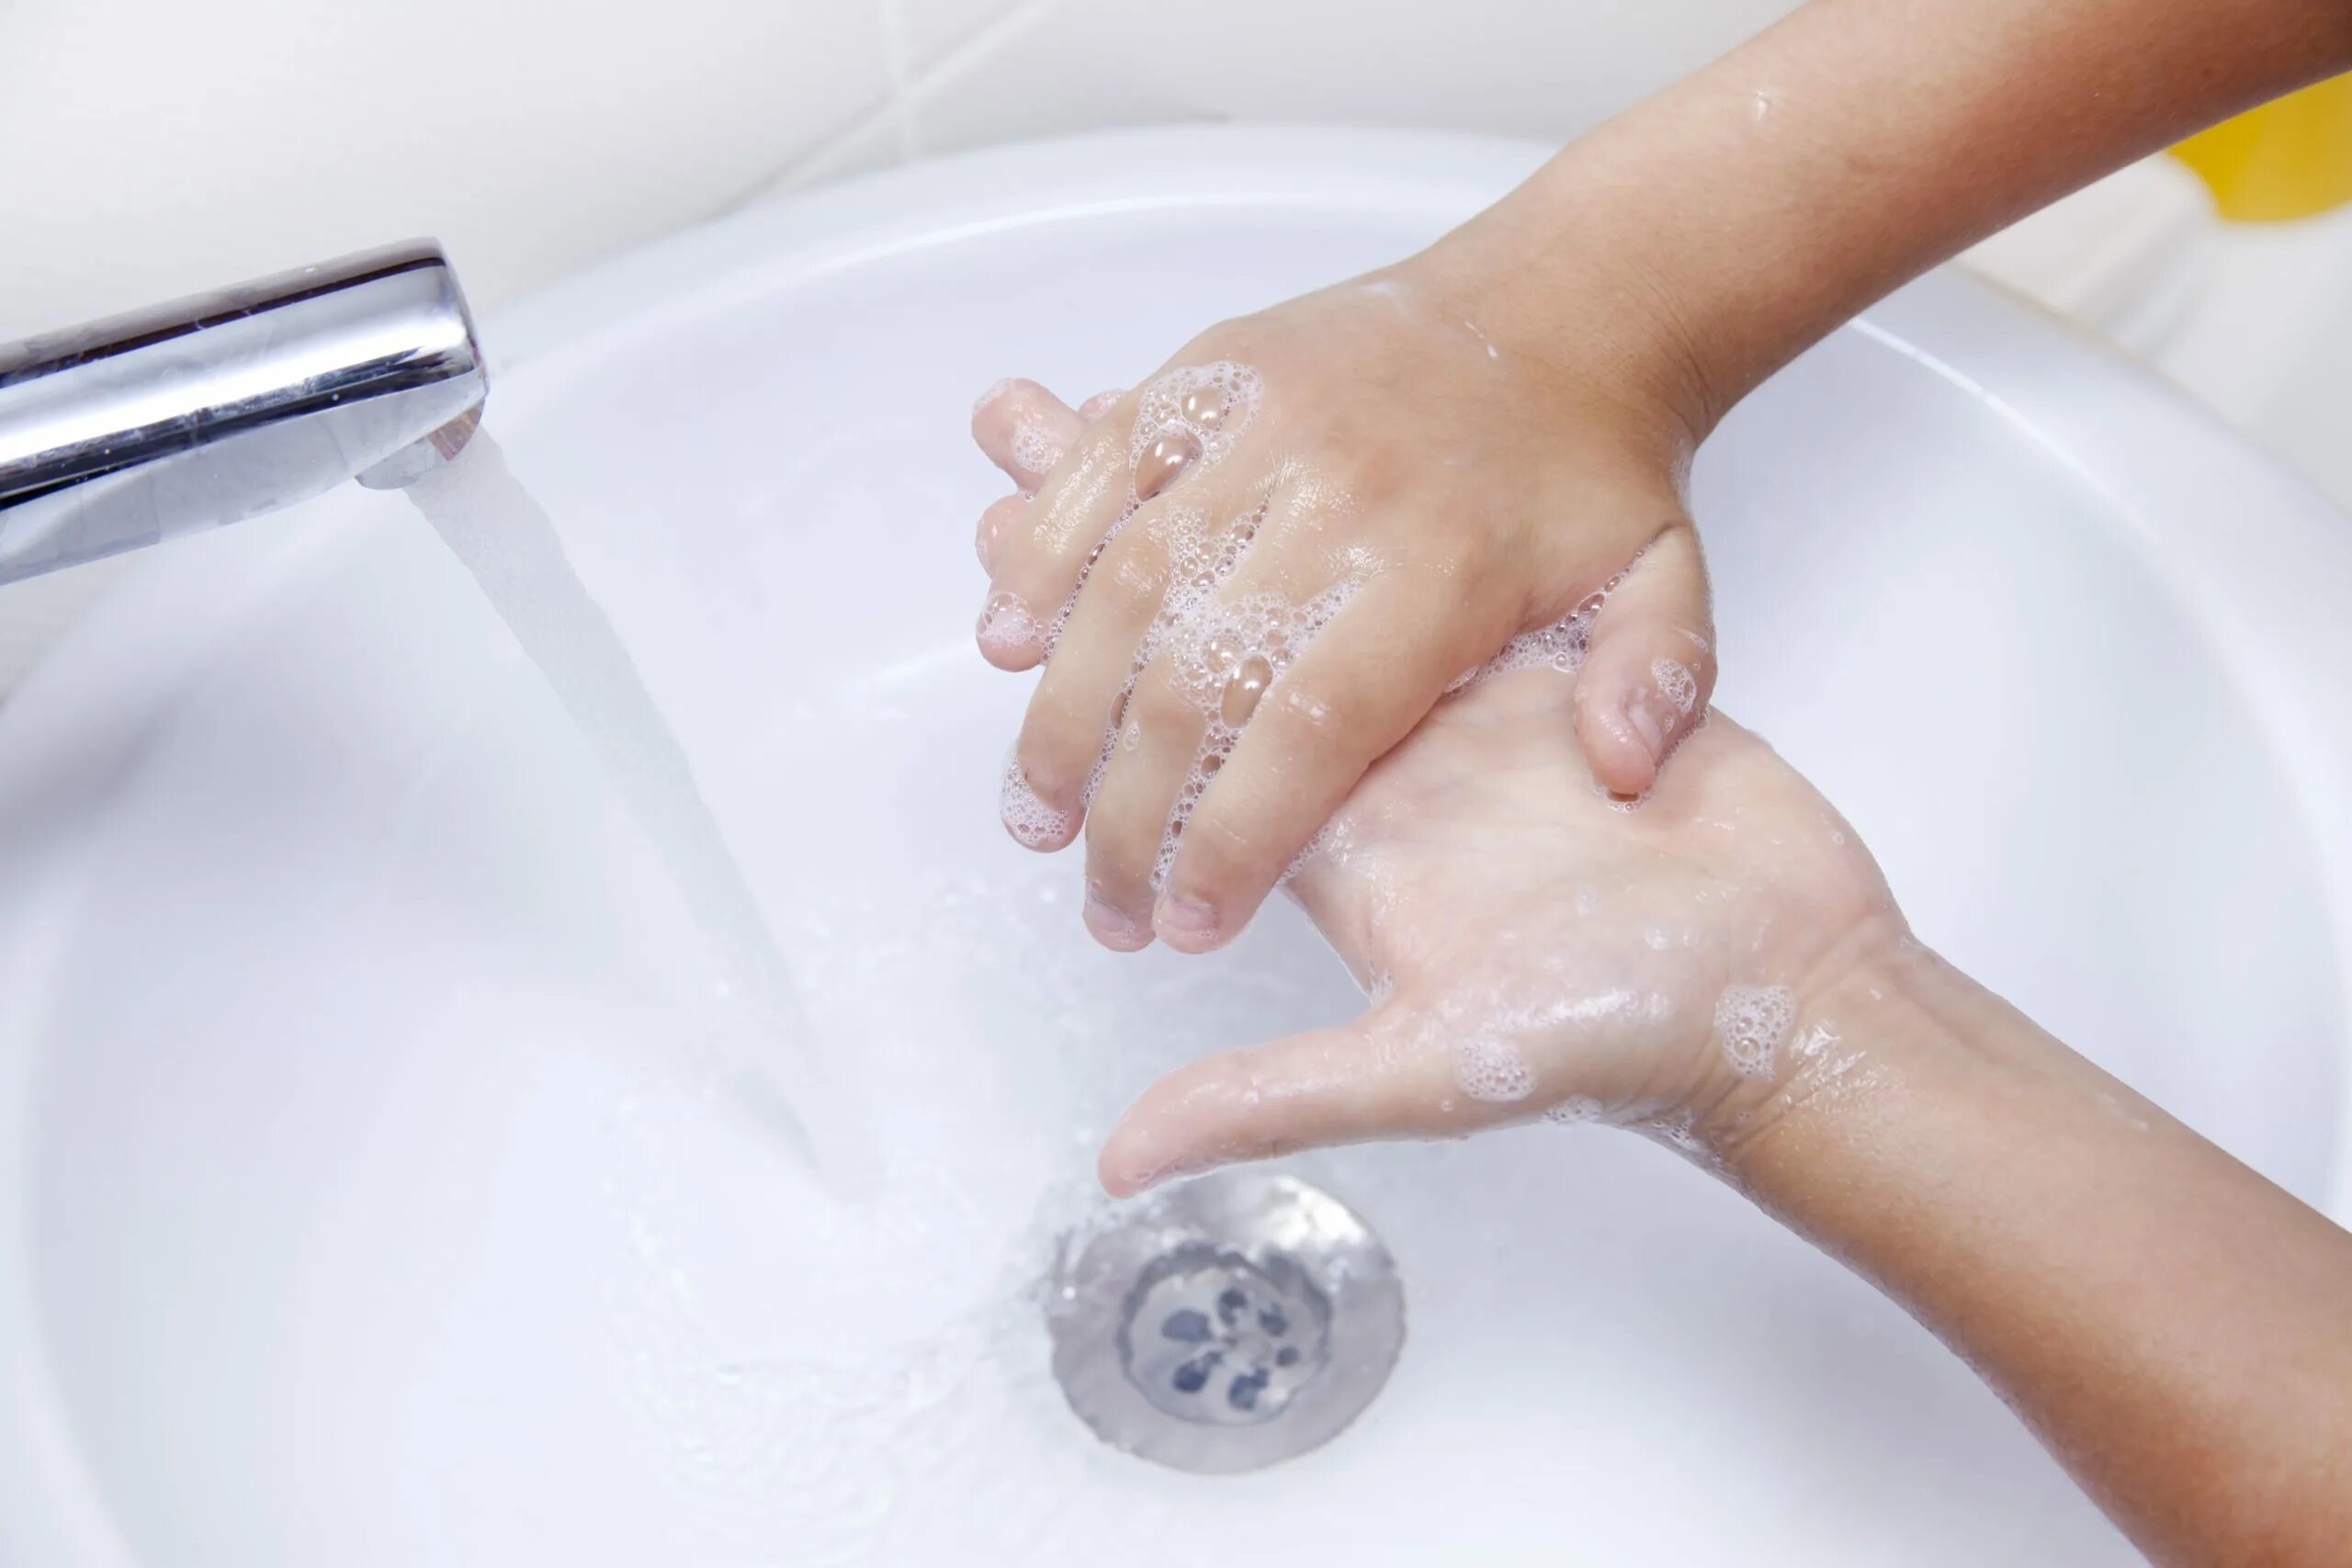 Мыло для рук. Гигиена рук с мылом. Ребенок моет руки с мылом. Детские руки в мыле. Мою руки 3 минуты